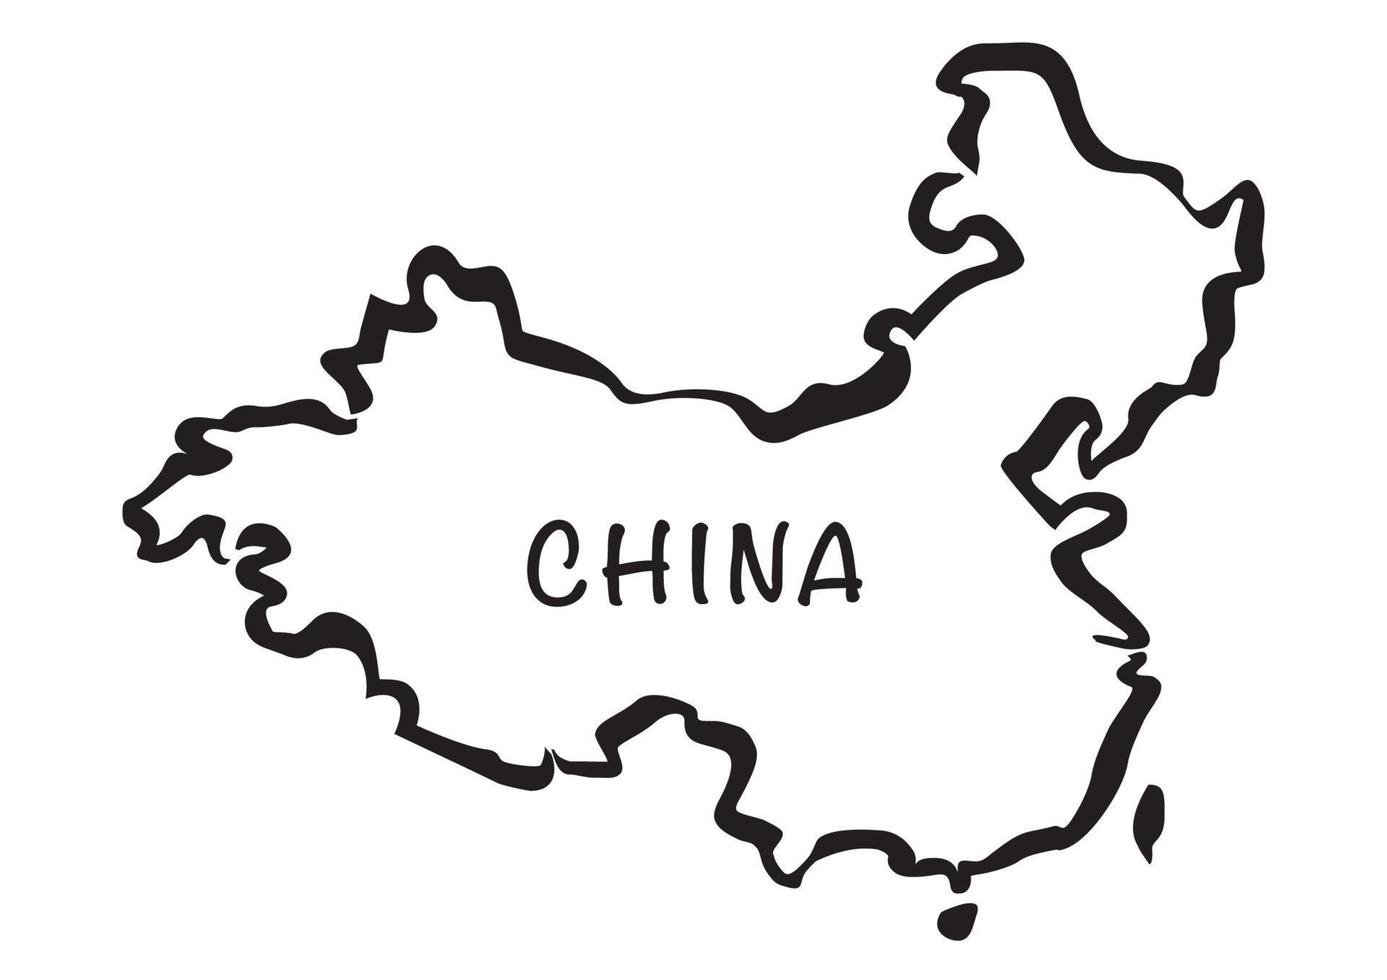 nero vettore disegno carta geografica di Cina.